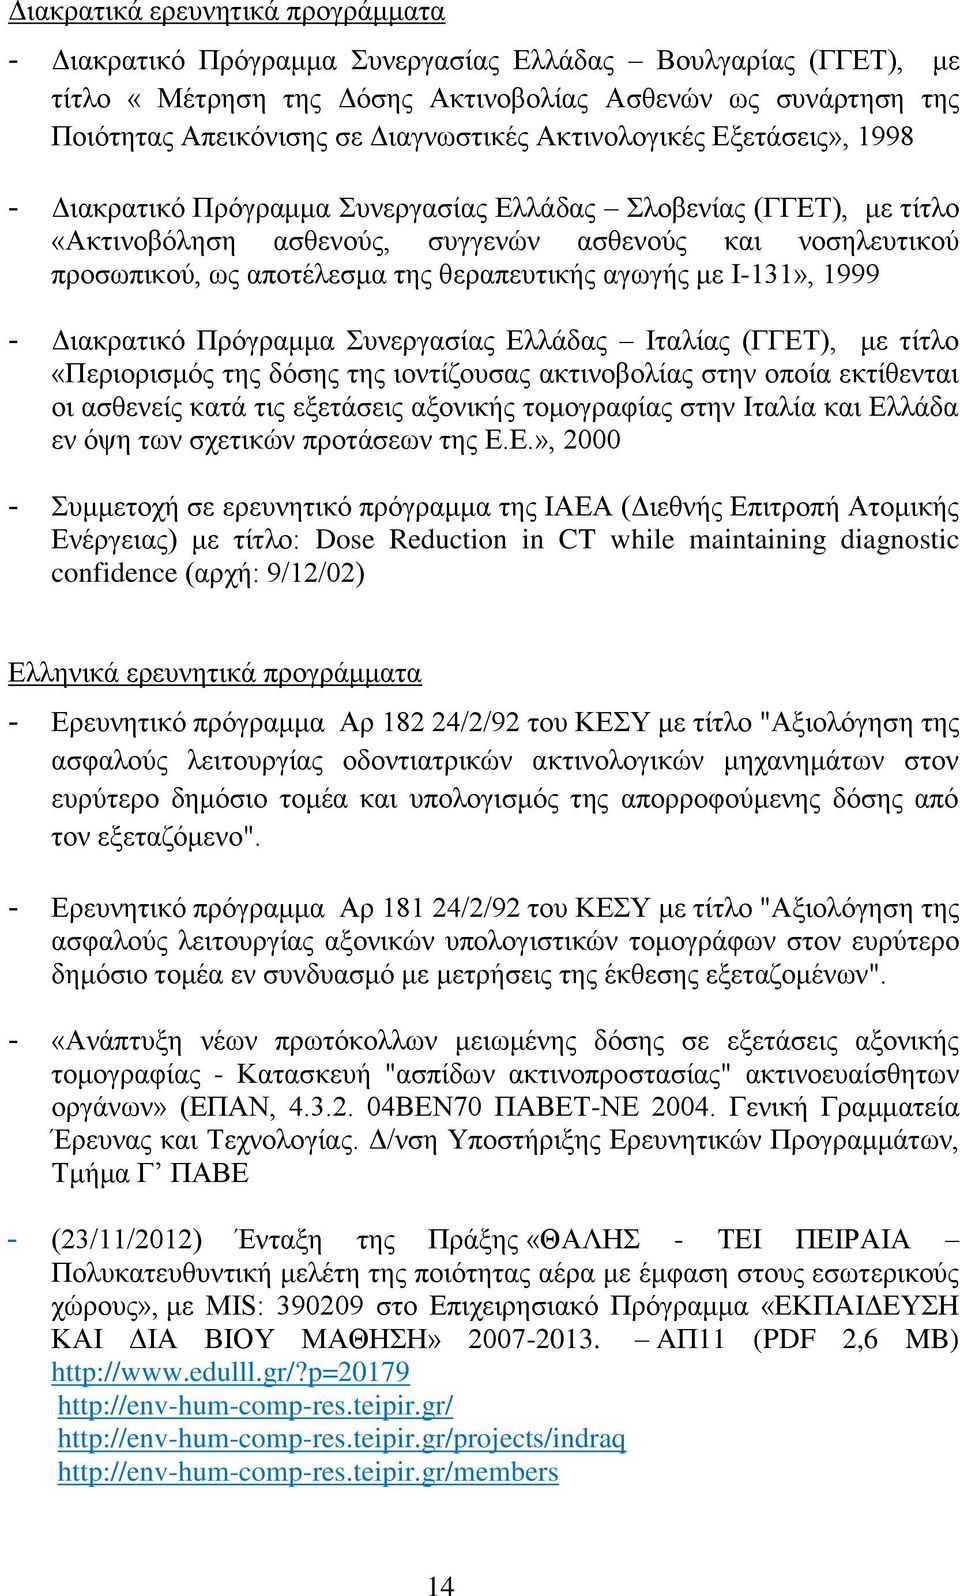 θεραπευτικής αγωγής με Ι-131», 1999 - Διακρατικό Πρόγραμμα Συνεργασίας Ελλάδας Ιταλίας (ΓΓΕΤ), με τίτλο «Περιορισμός της δόσης της ιοντίζουσας ακτινοβολίας στην οποία εκτίθενται οι ασθενείς κατά τις